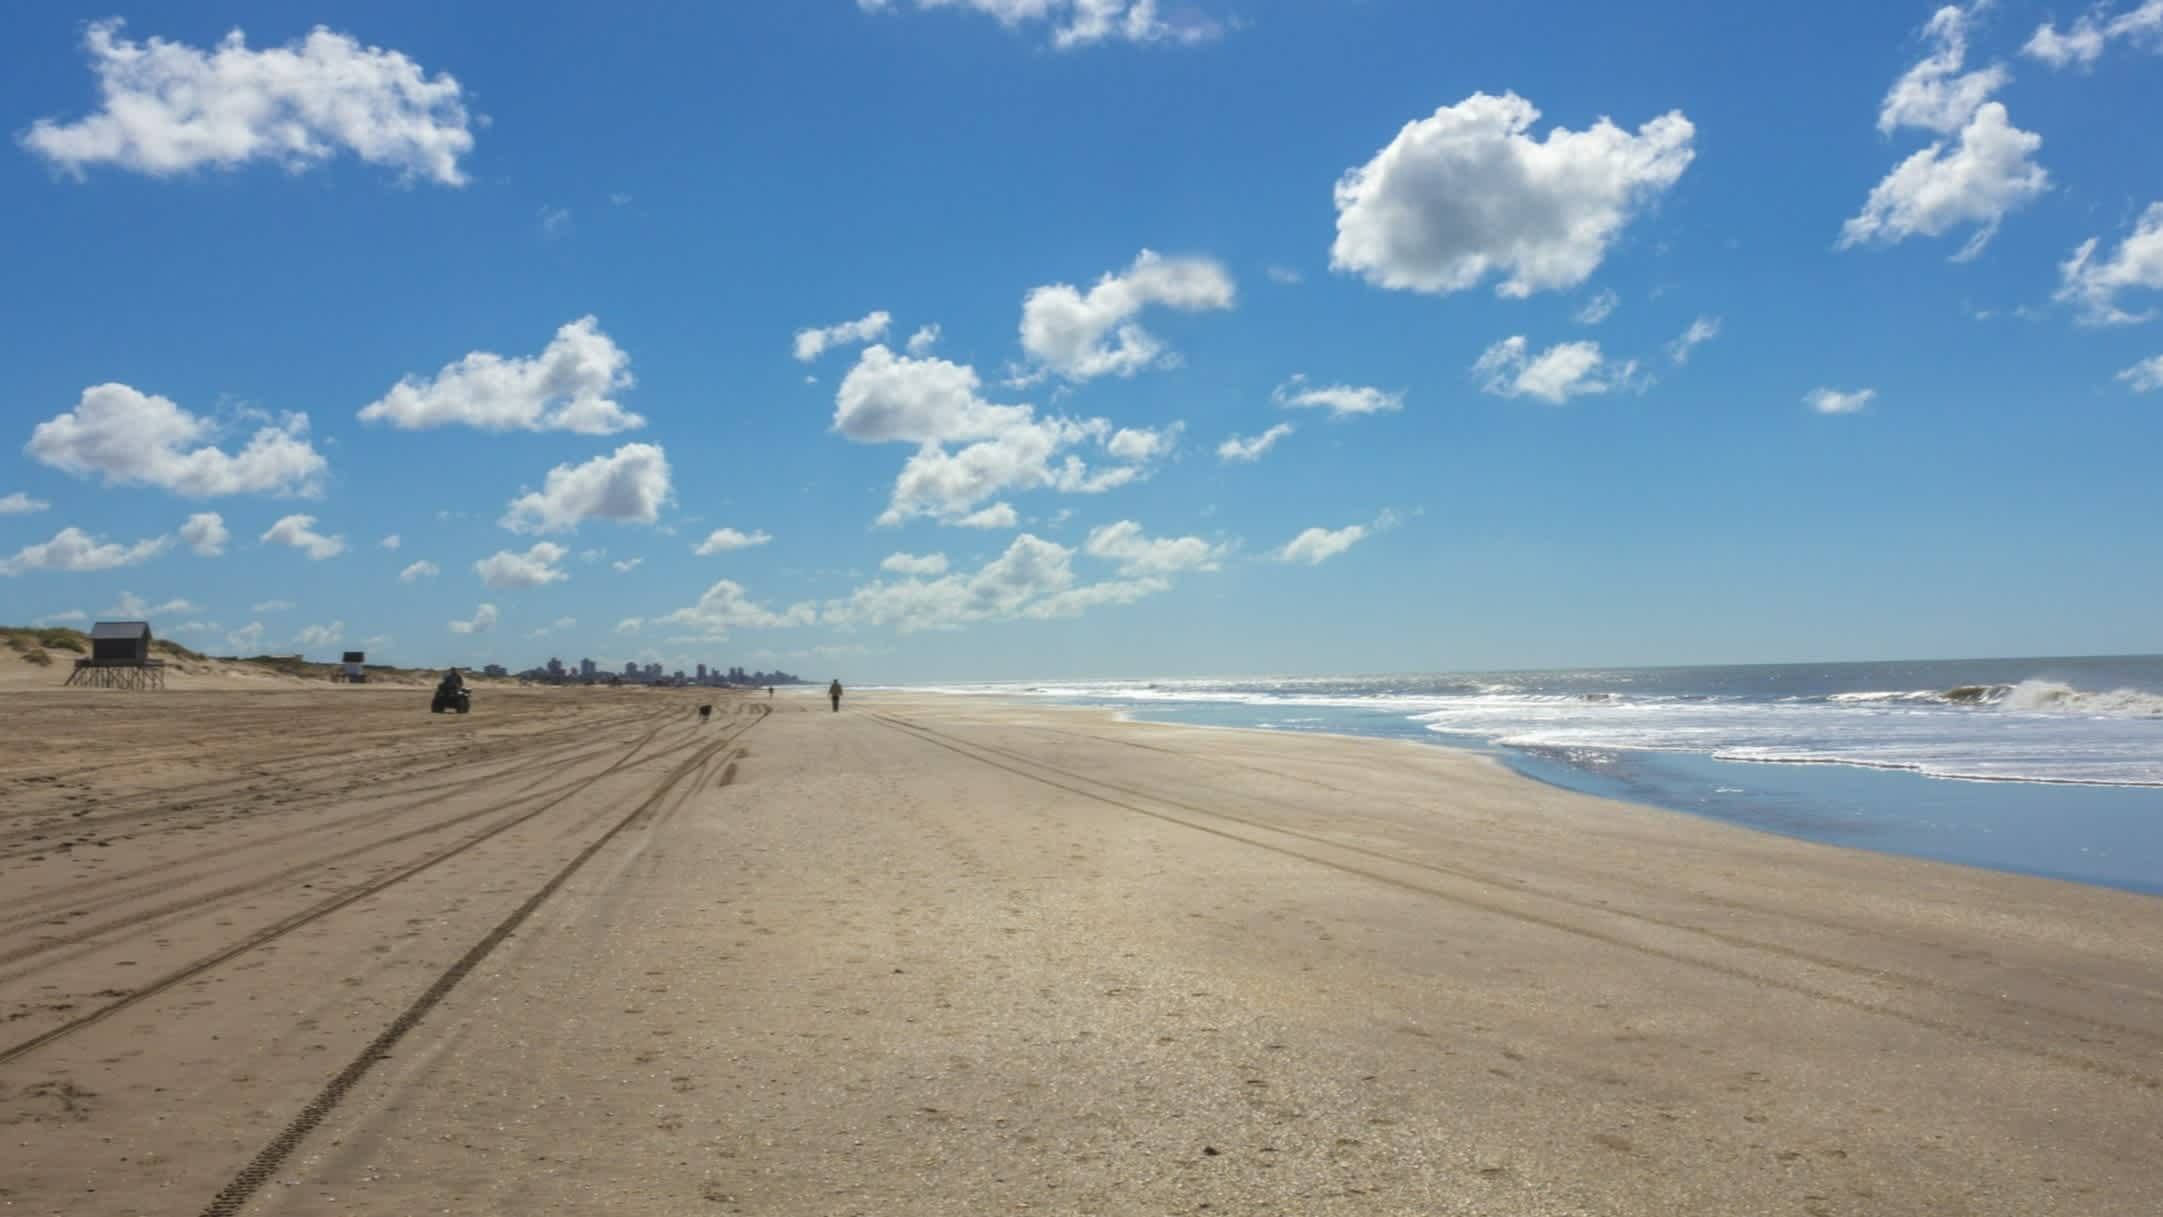 Longue étendue de sable au bord de l'eau sur la plage Villa Gesell en Argentine